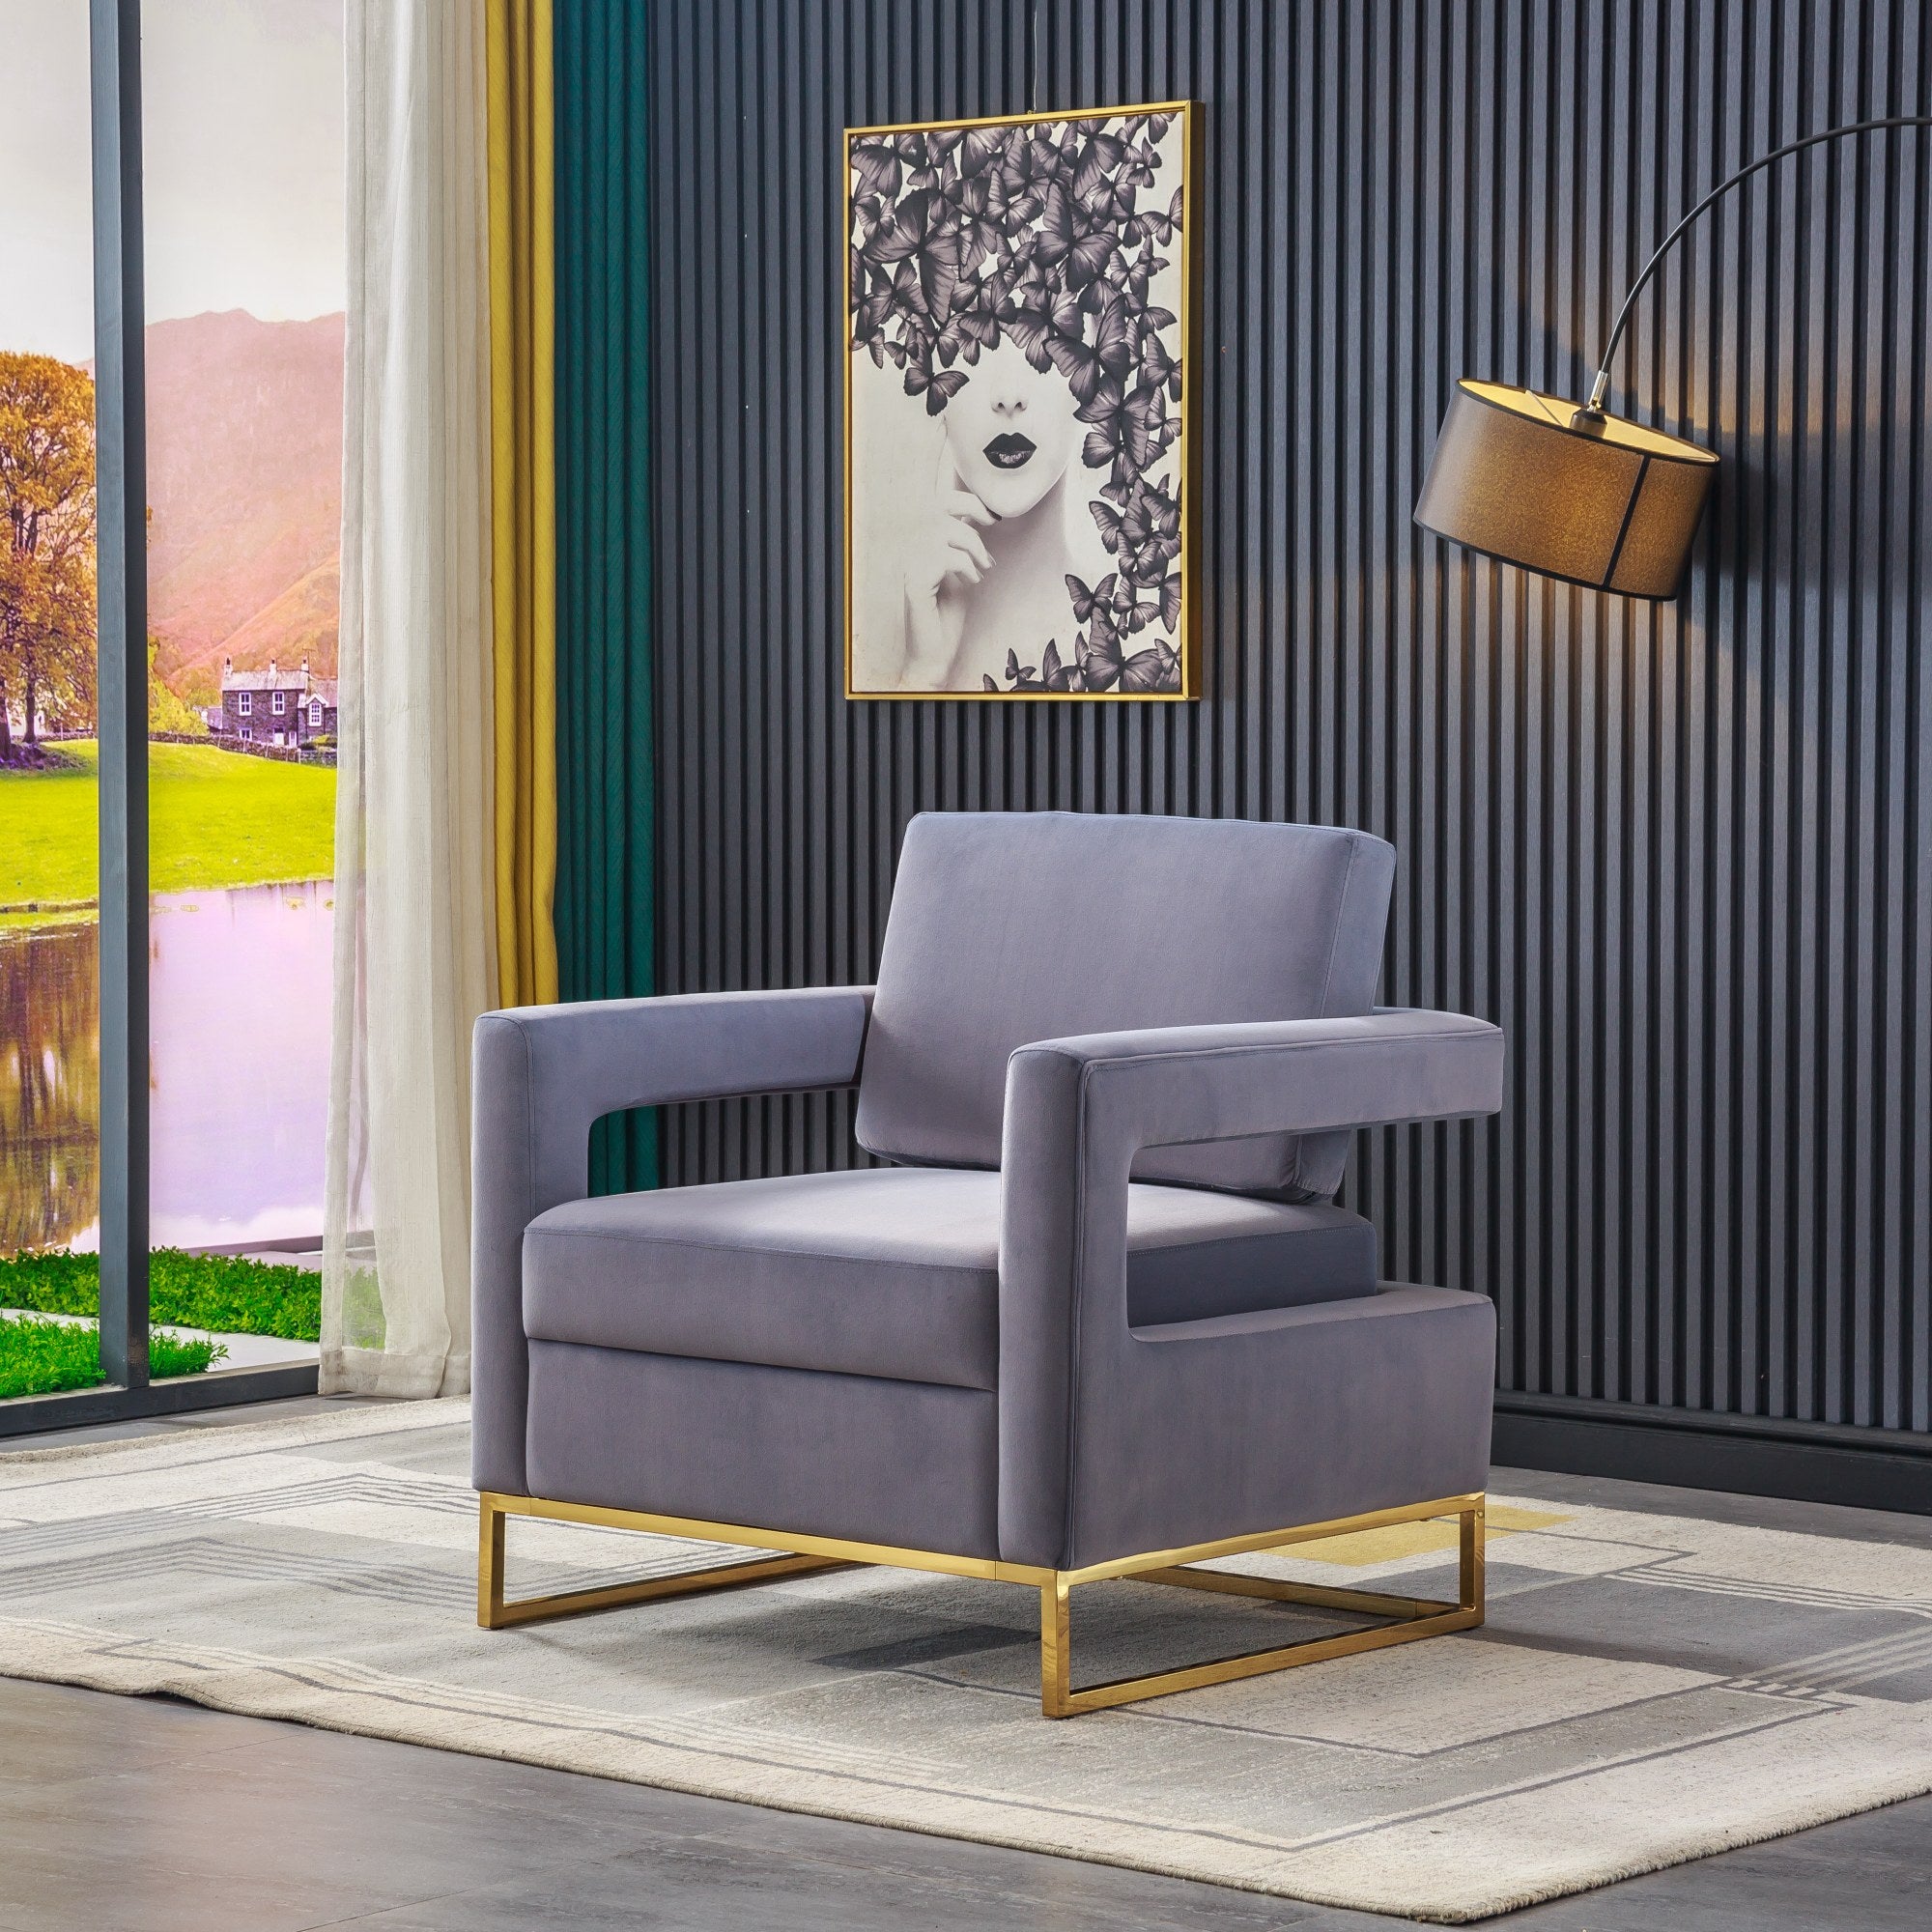 Homio Decor Living Room Grey / United States Modern Velvet Armchair with Golden Base